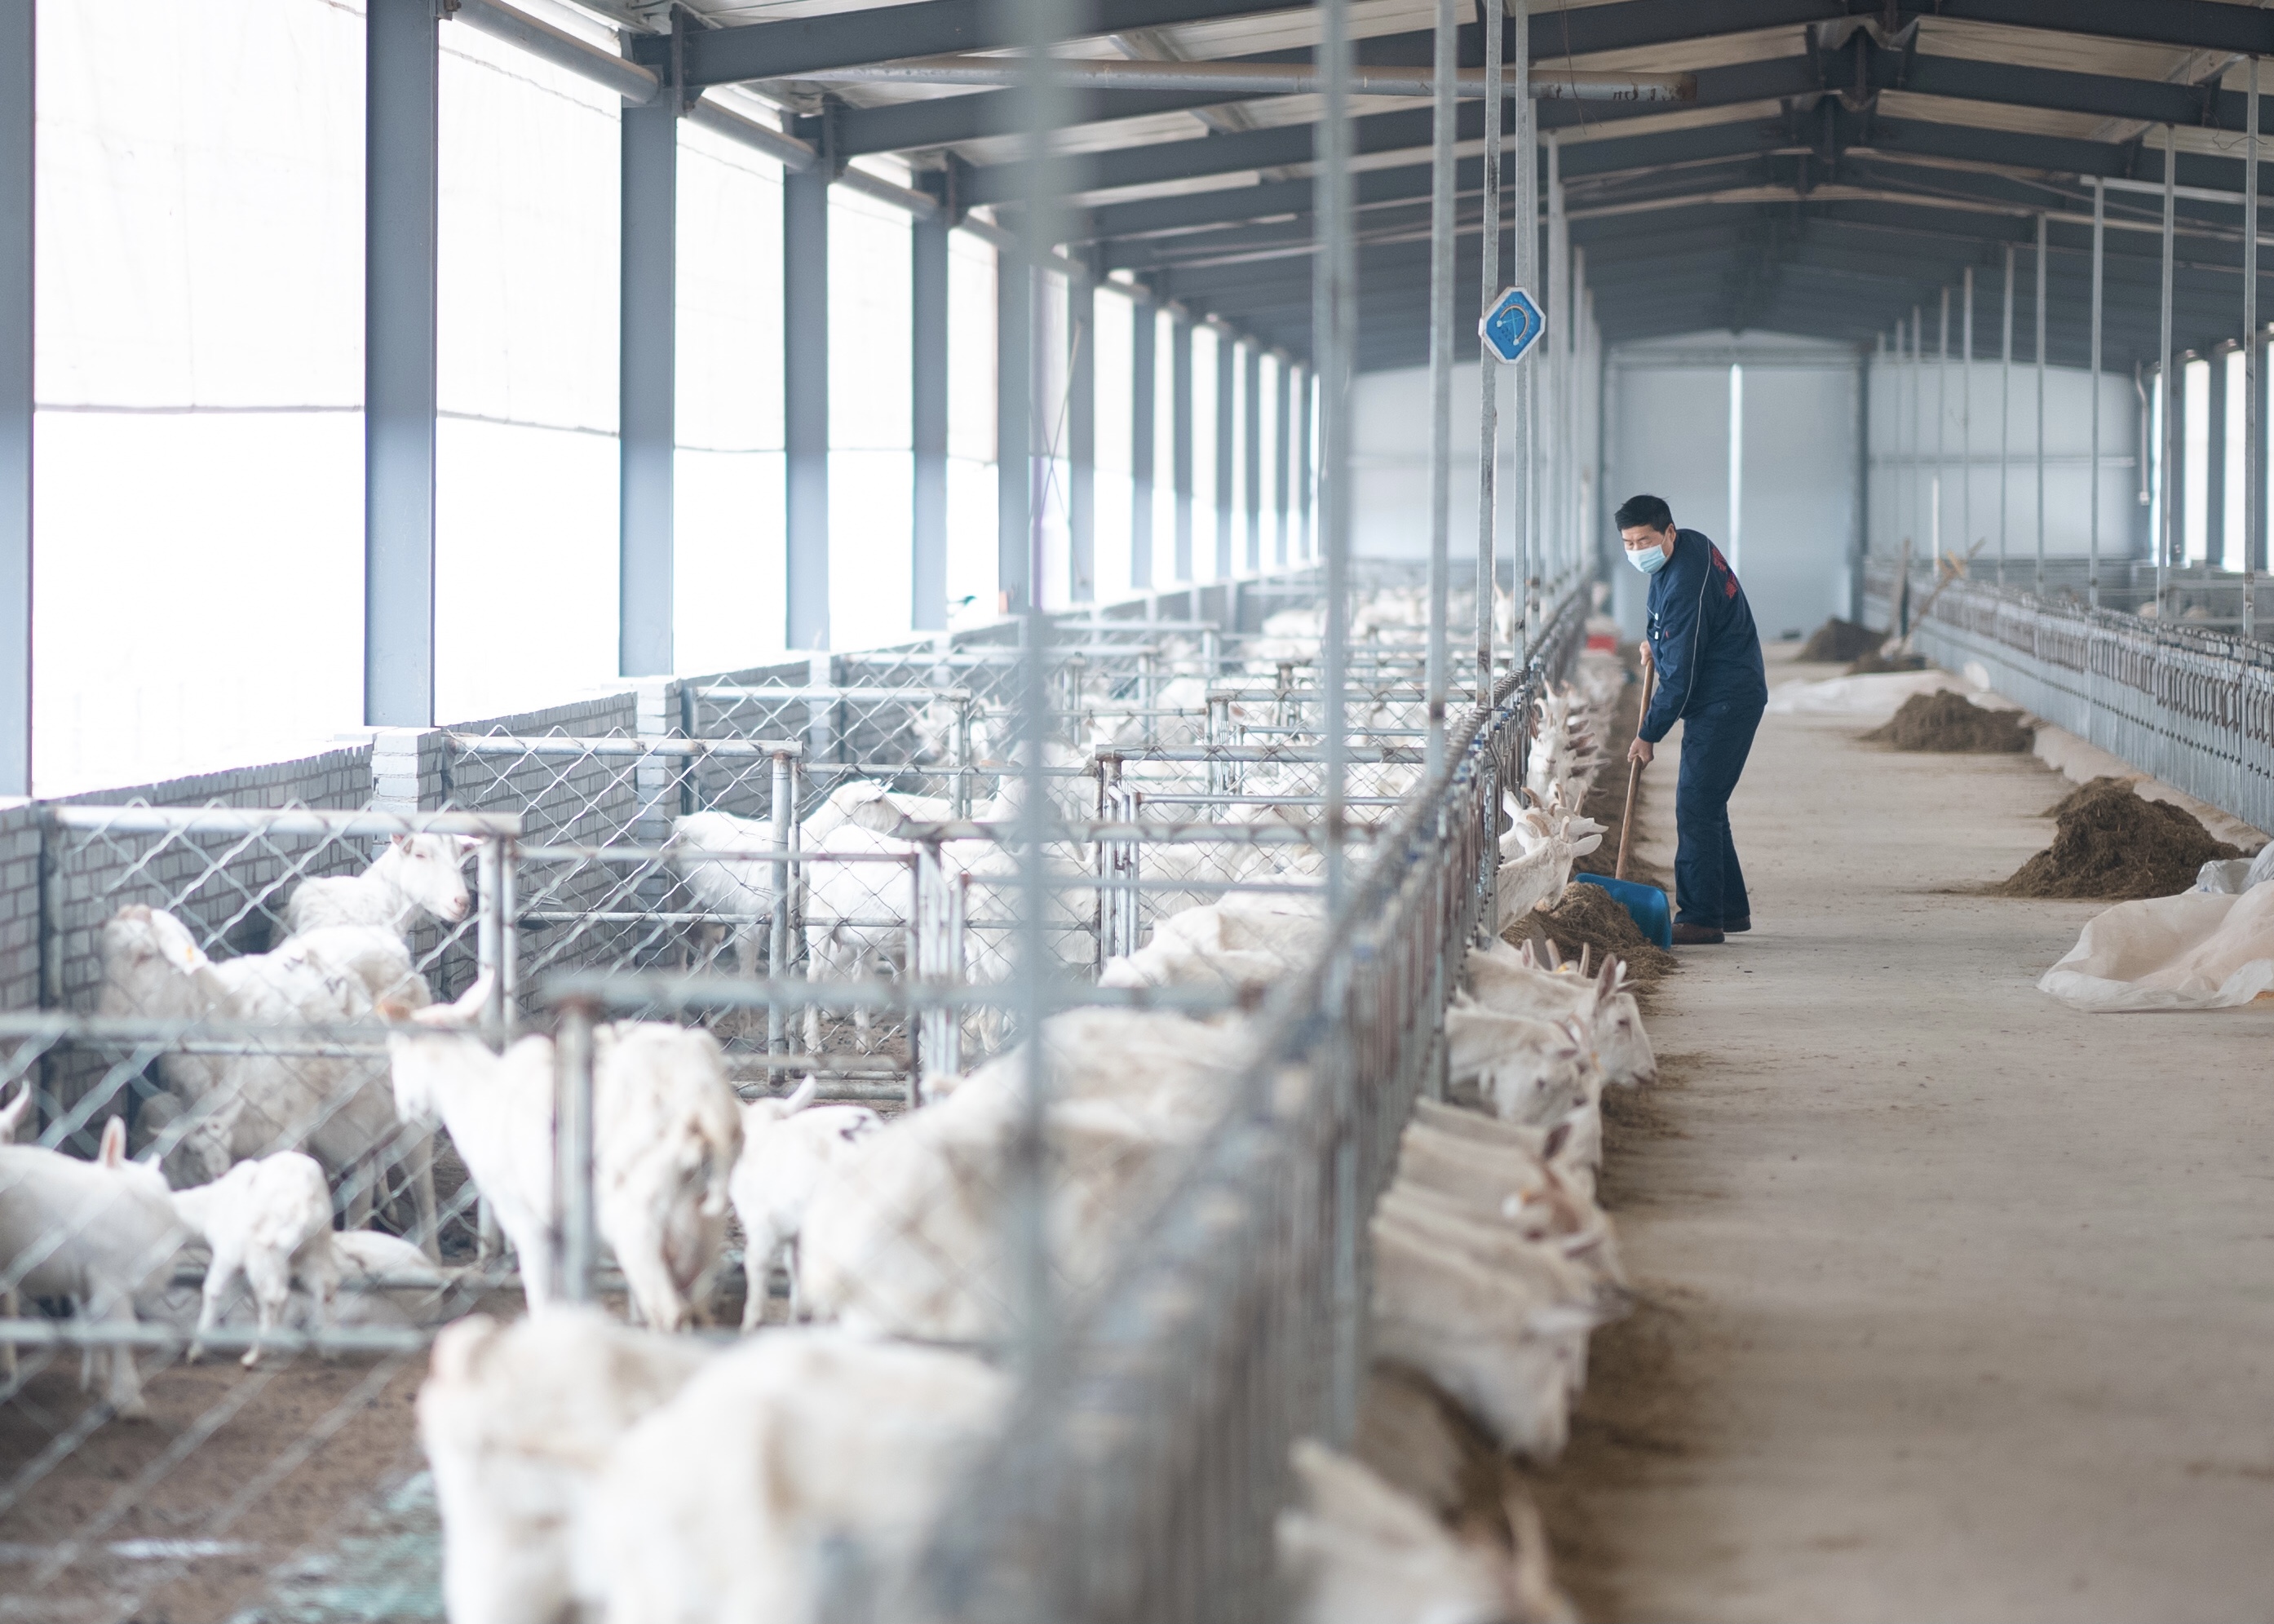 助力嵩县脱贫攻坚,推动河南奶山羊产业发展—— 羊妙妙的带贫之路